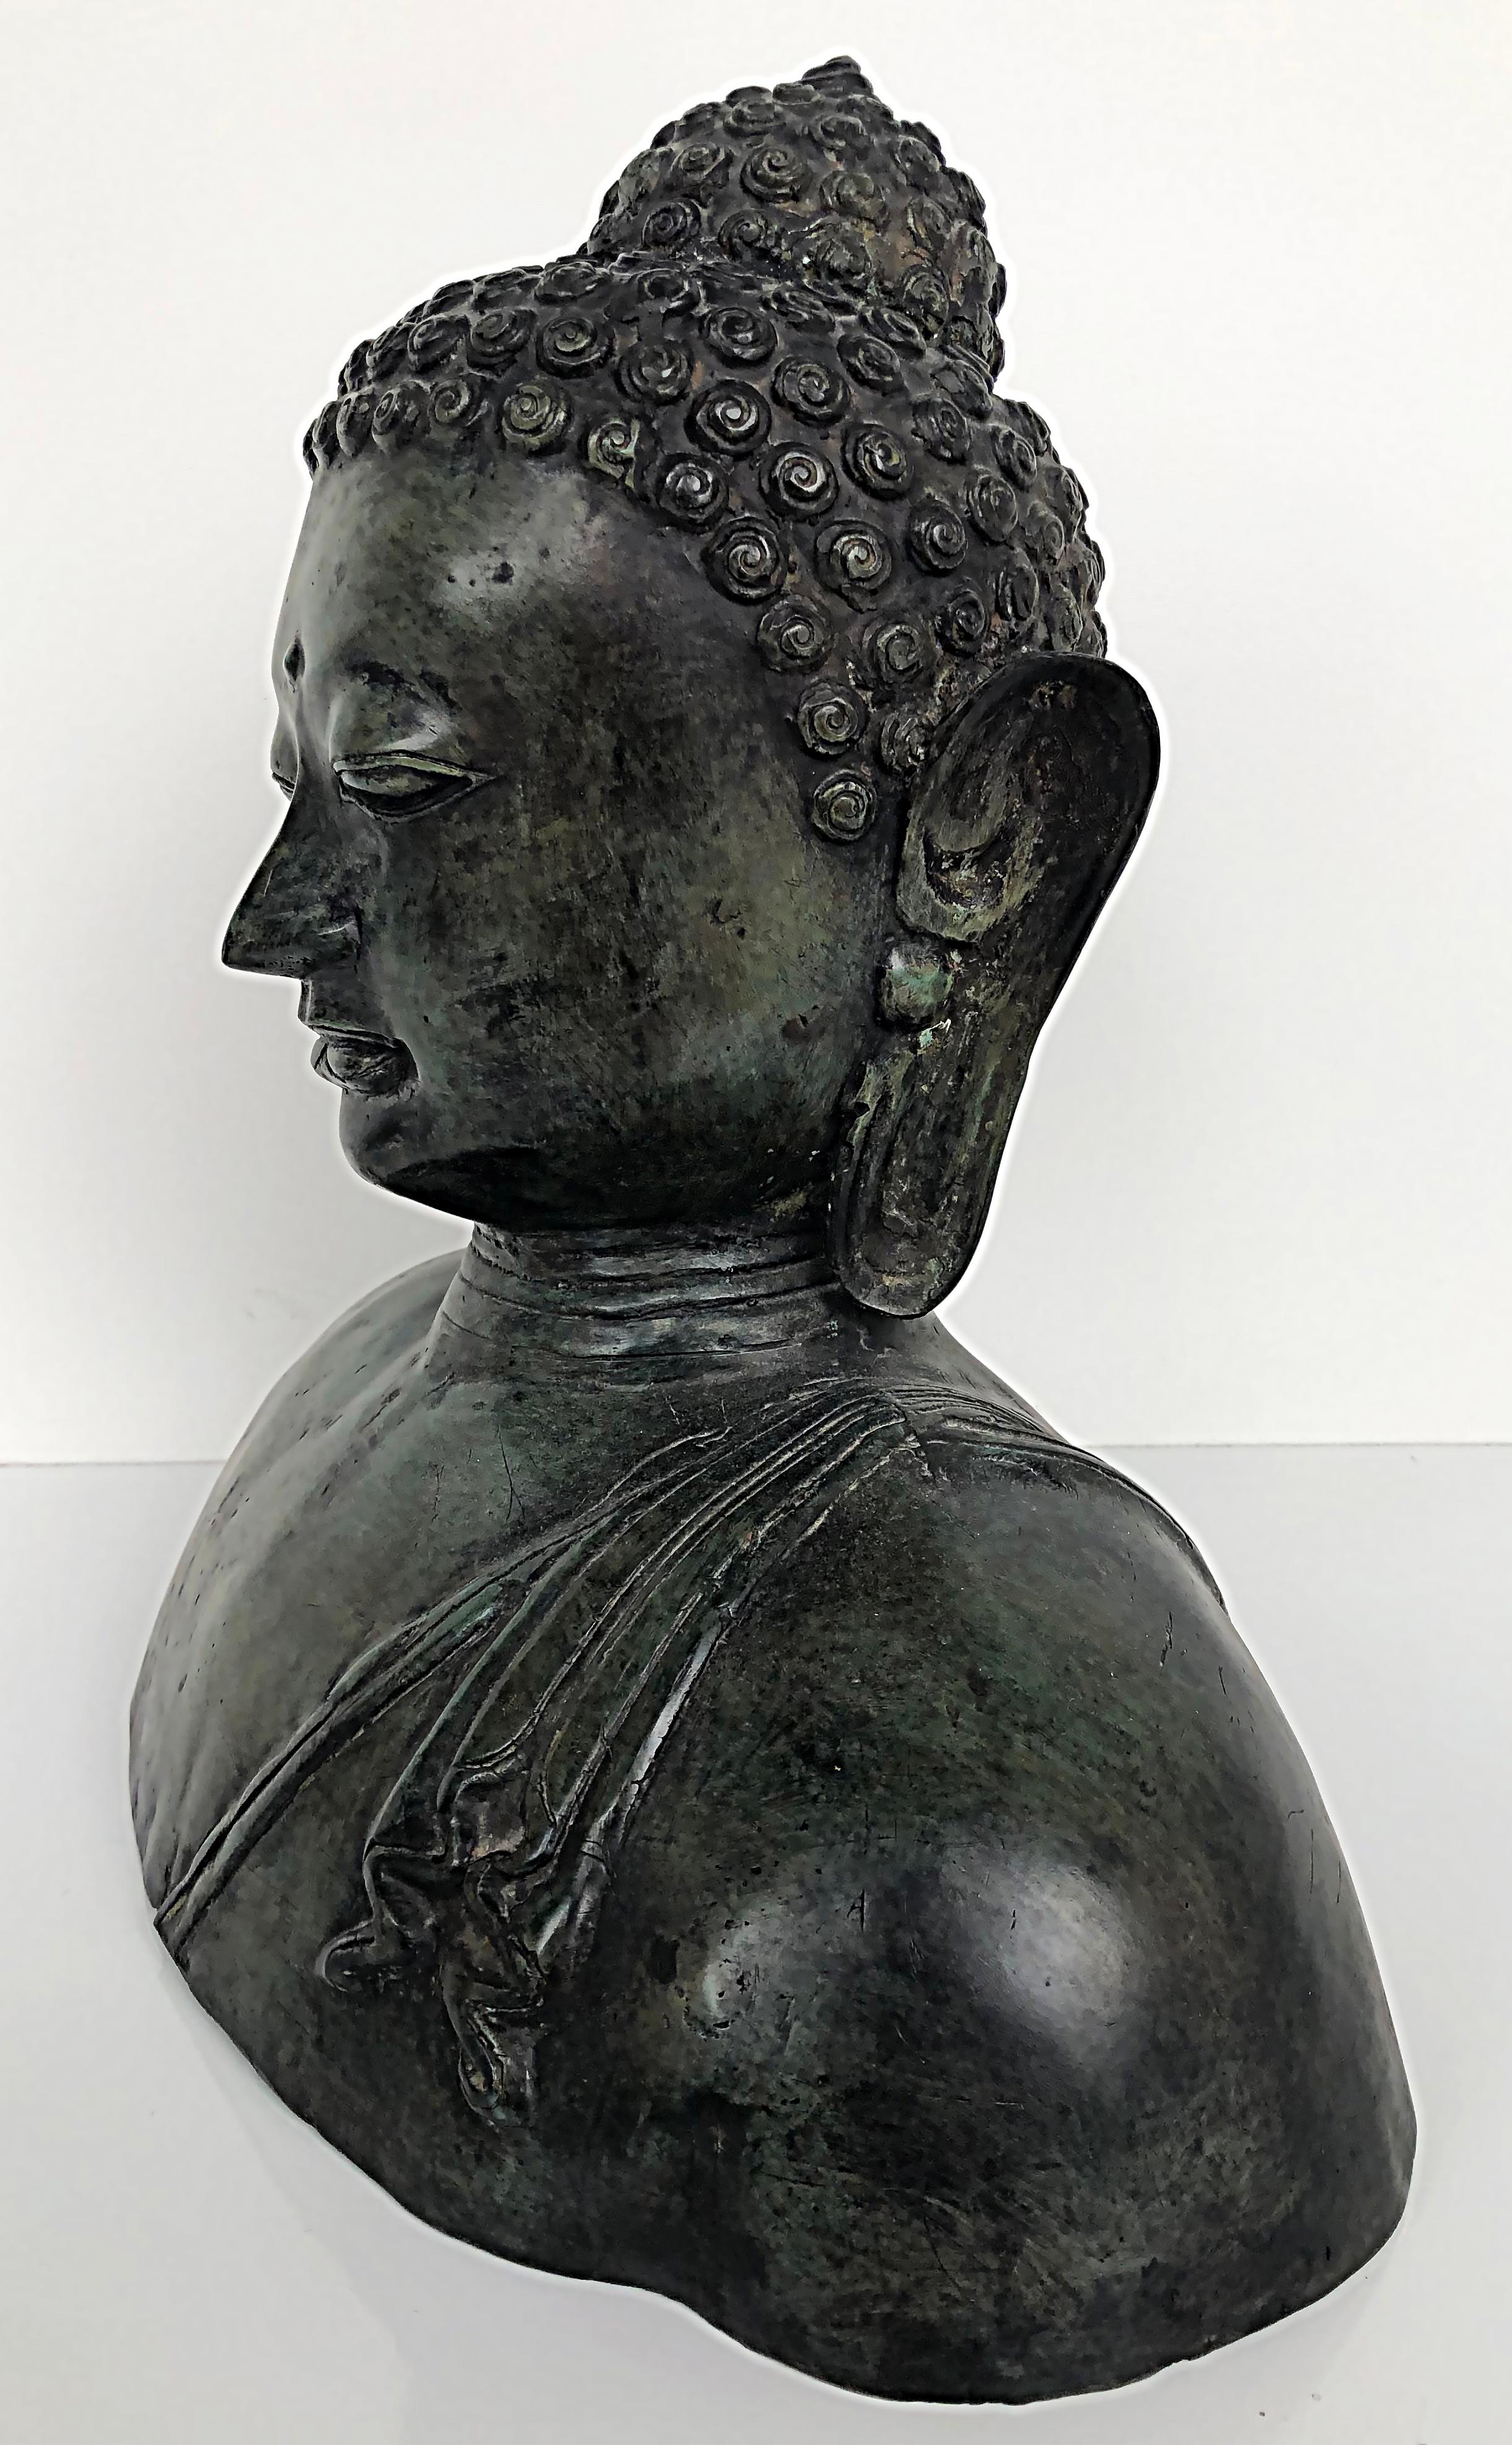 Bronze Thailand figurative Buddha-Skulptur Büste, 20. Jahrhundert mit Patina.

Zum Verkauf angeboten wird eine große und erhebliche Bronze-Buddha-Büste aus Thailand. Die Büste stammt aus dem 2. Jahrhundert und weist eine reiche dunkelgrüne Patina